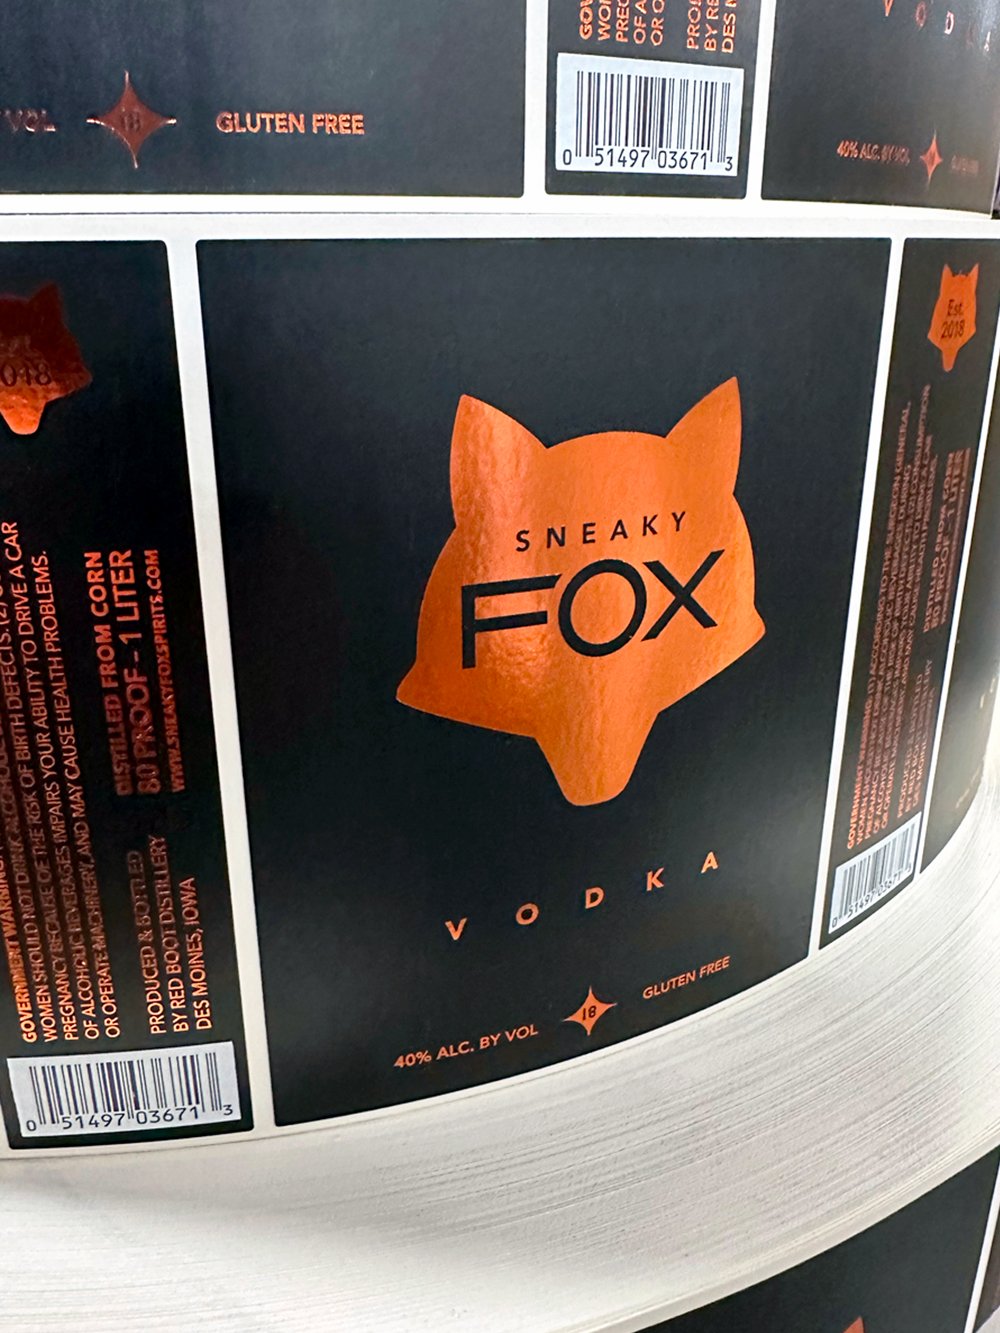 Custom-Label-Manufacturers-Chicago-Liquor-Bottles-Sneaky-Fox-1.jpg